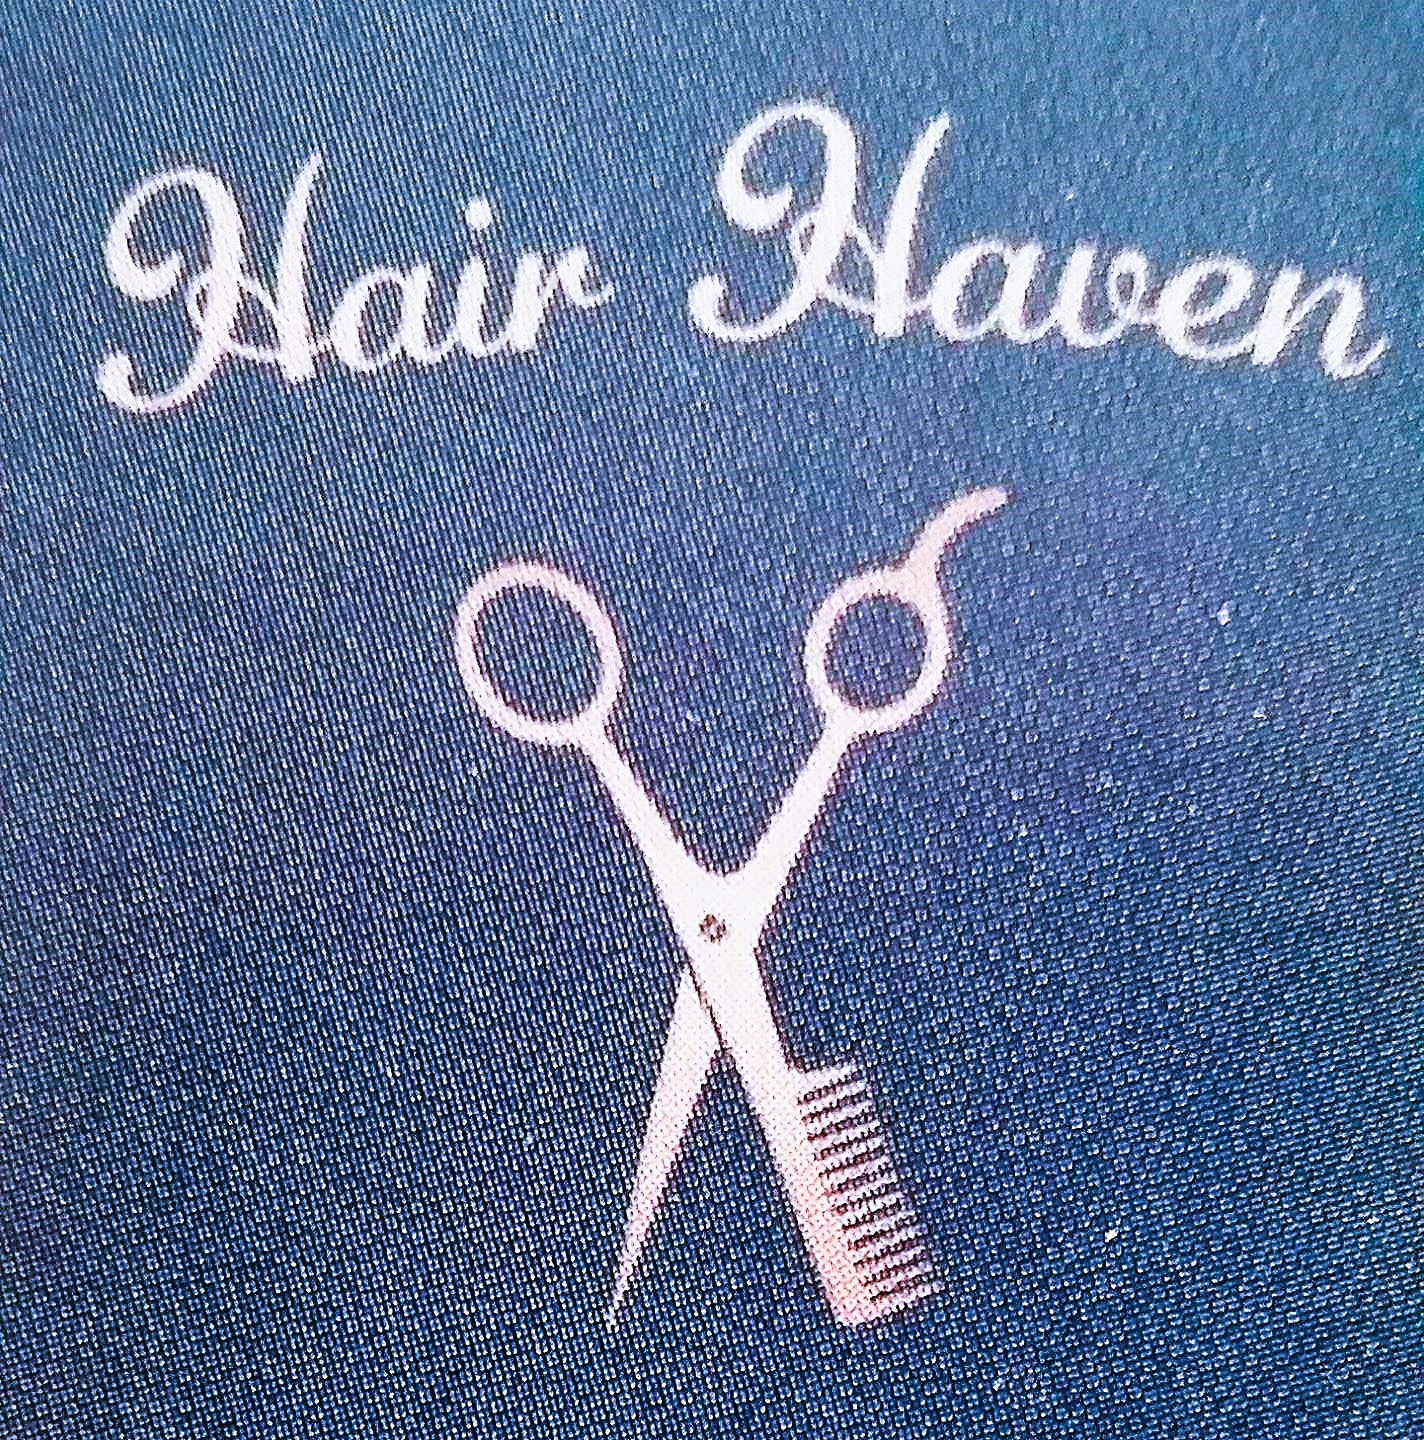 Hair Haven LLC